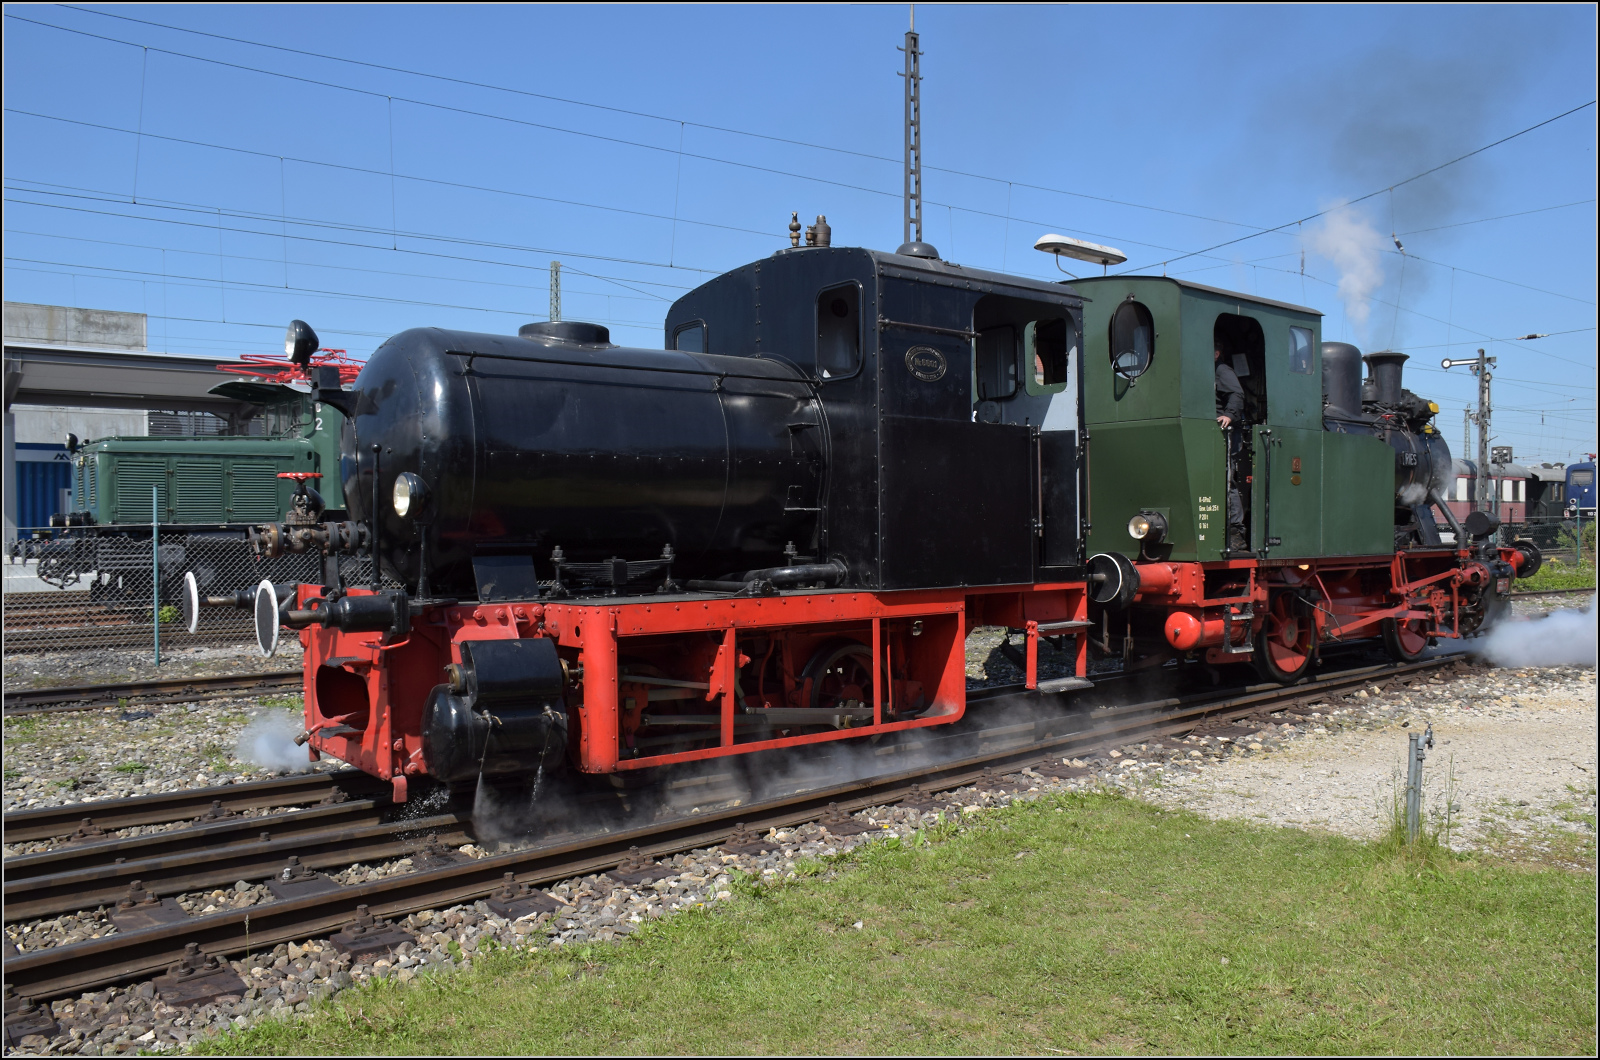 175 Jahre Eisenbahn in Nördlingen / 55 Jahre Bayrisches Eisenbahnmuseum.

Dampfspeicherlok Nr. 6601 wurde von Krauss im Jahr 1912 geliefert und scheint ihre Fabriknummer als Bezeichnung übernommen zu haben. An diesem Tag hatte die kleine Lok viel zu tun, sie musste einige kalte Dampfloks auf die Drehscheibe zur Präsentation ziehen. Mai 2024.